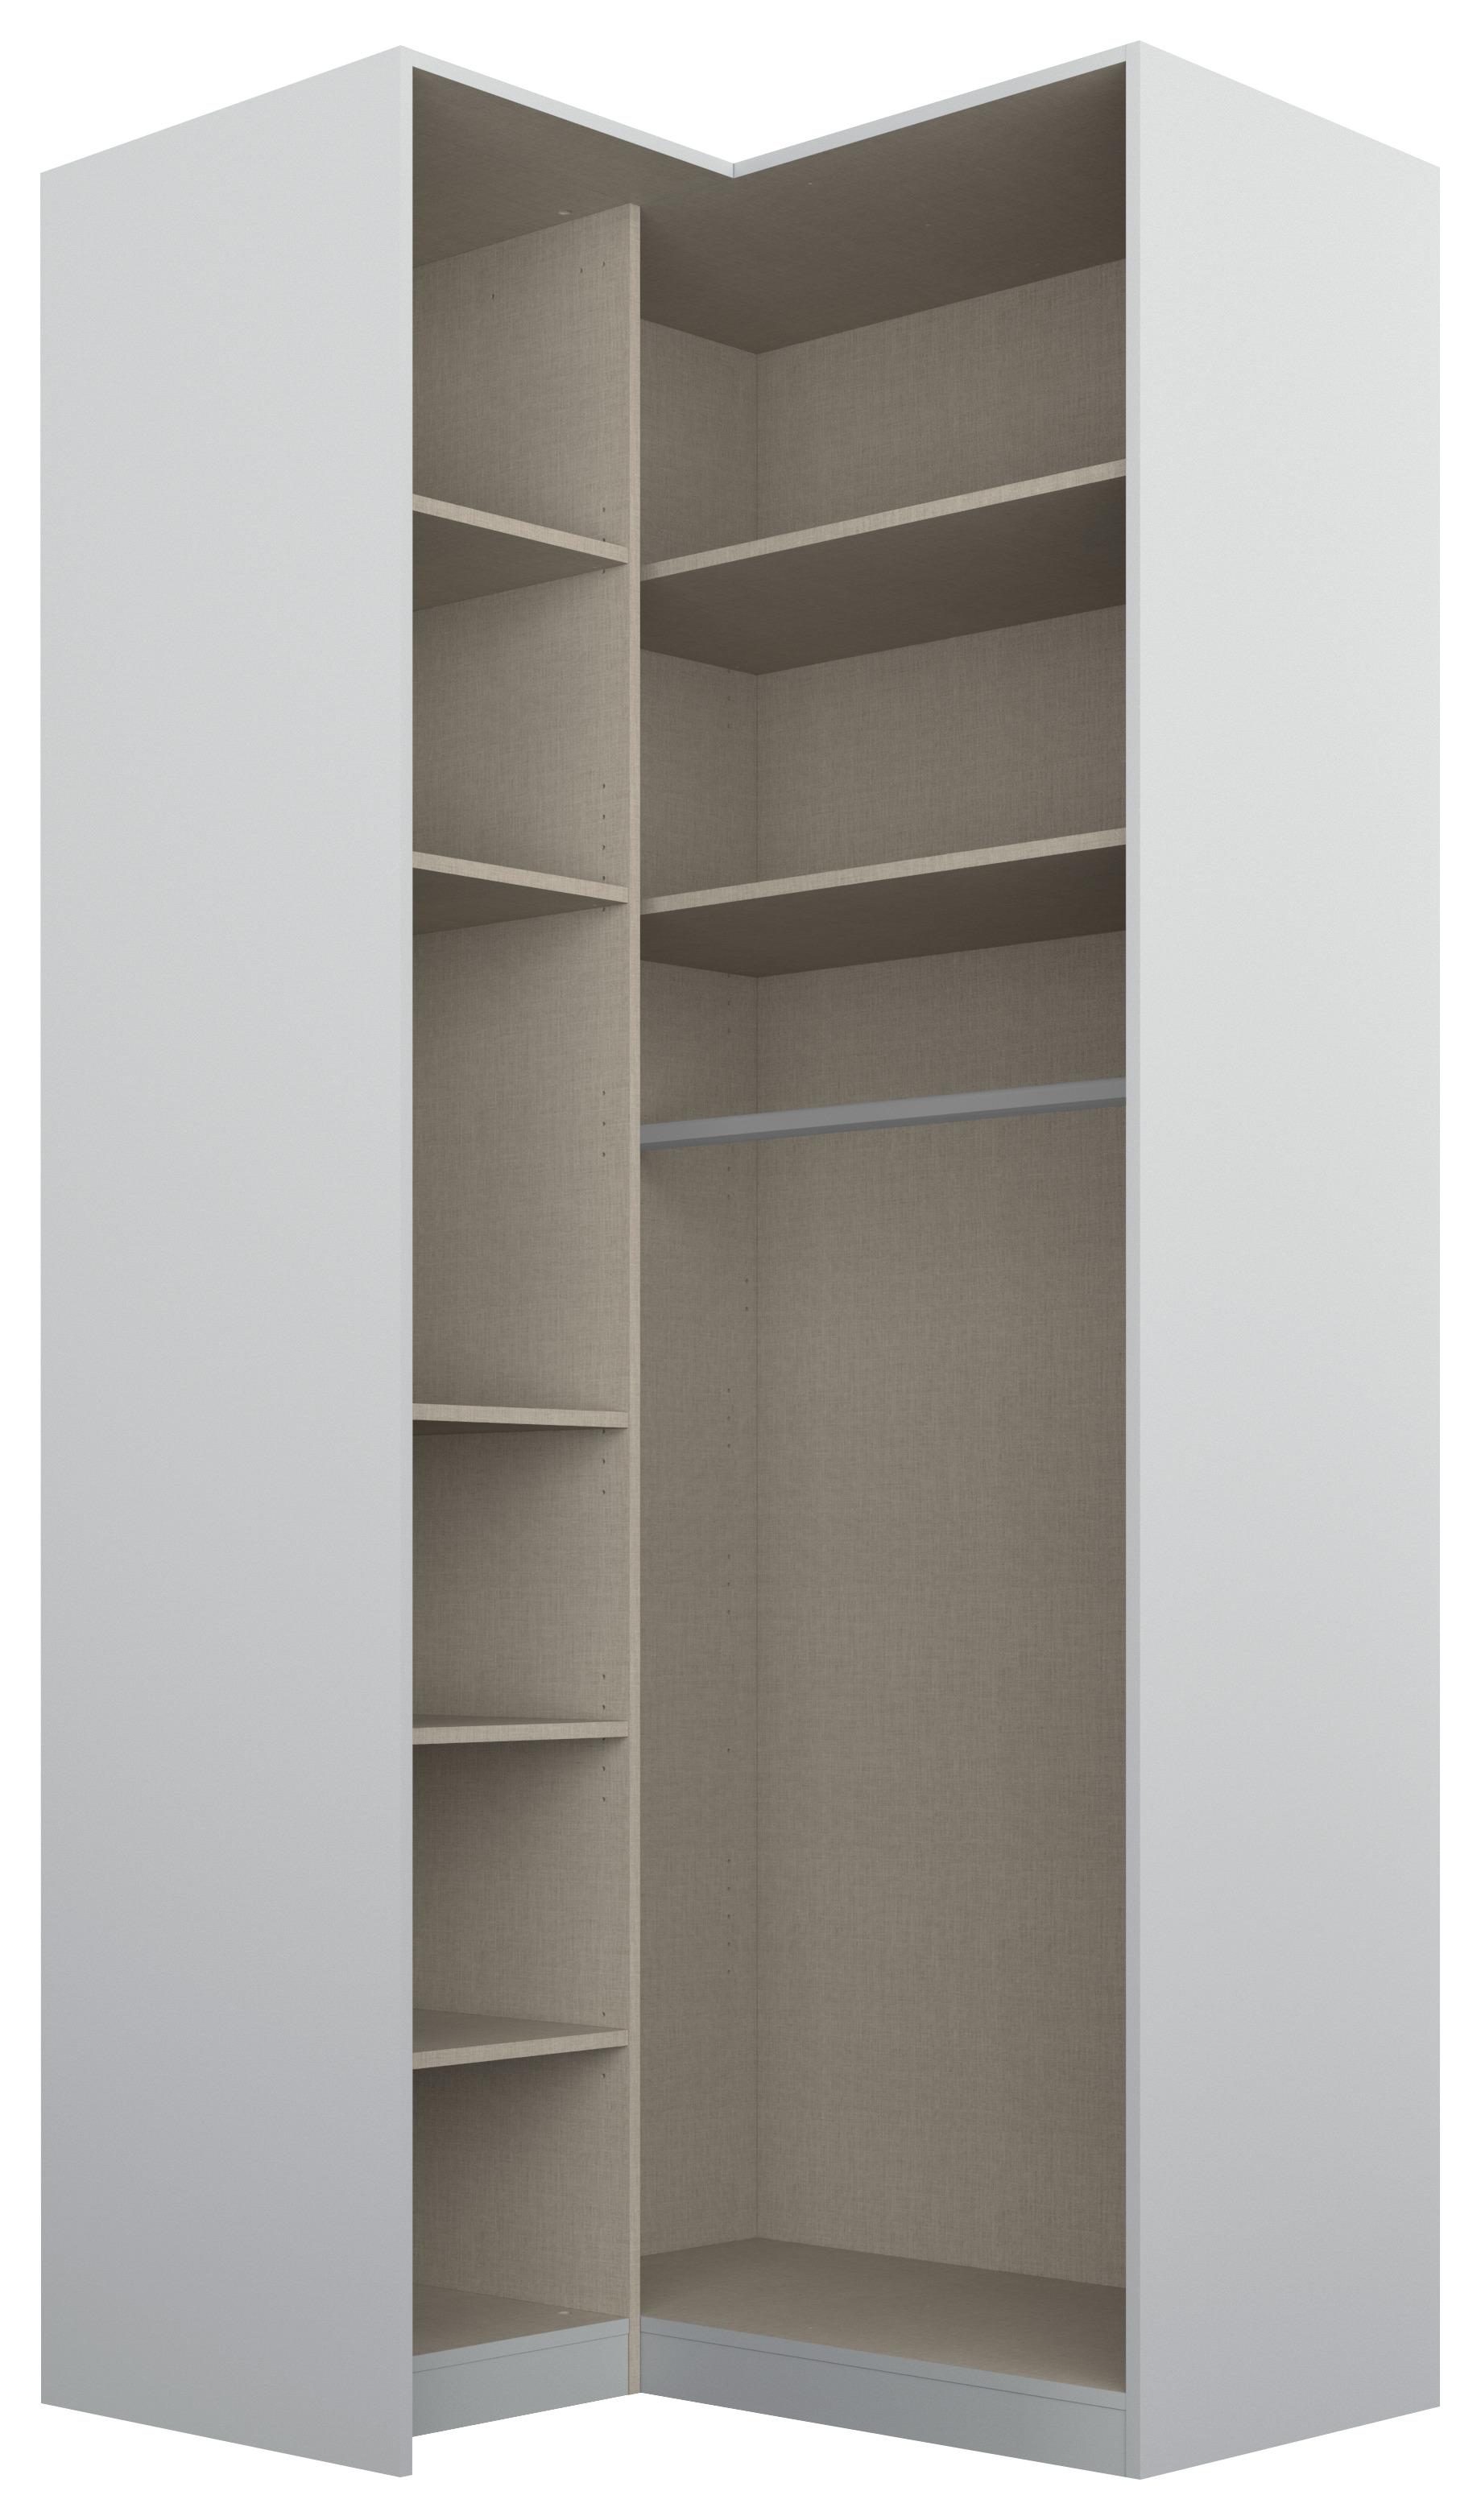 Rohová Šatní Skříň Alabama - světle šedá/barvy hliníku, Moderní, kompozitní dřevo (100/229/102cm)